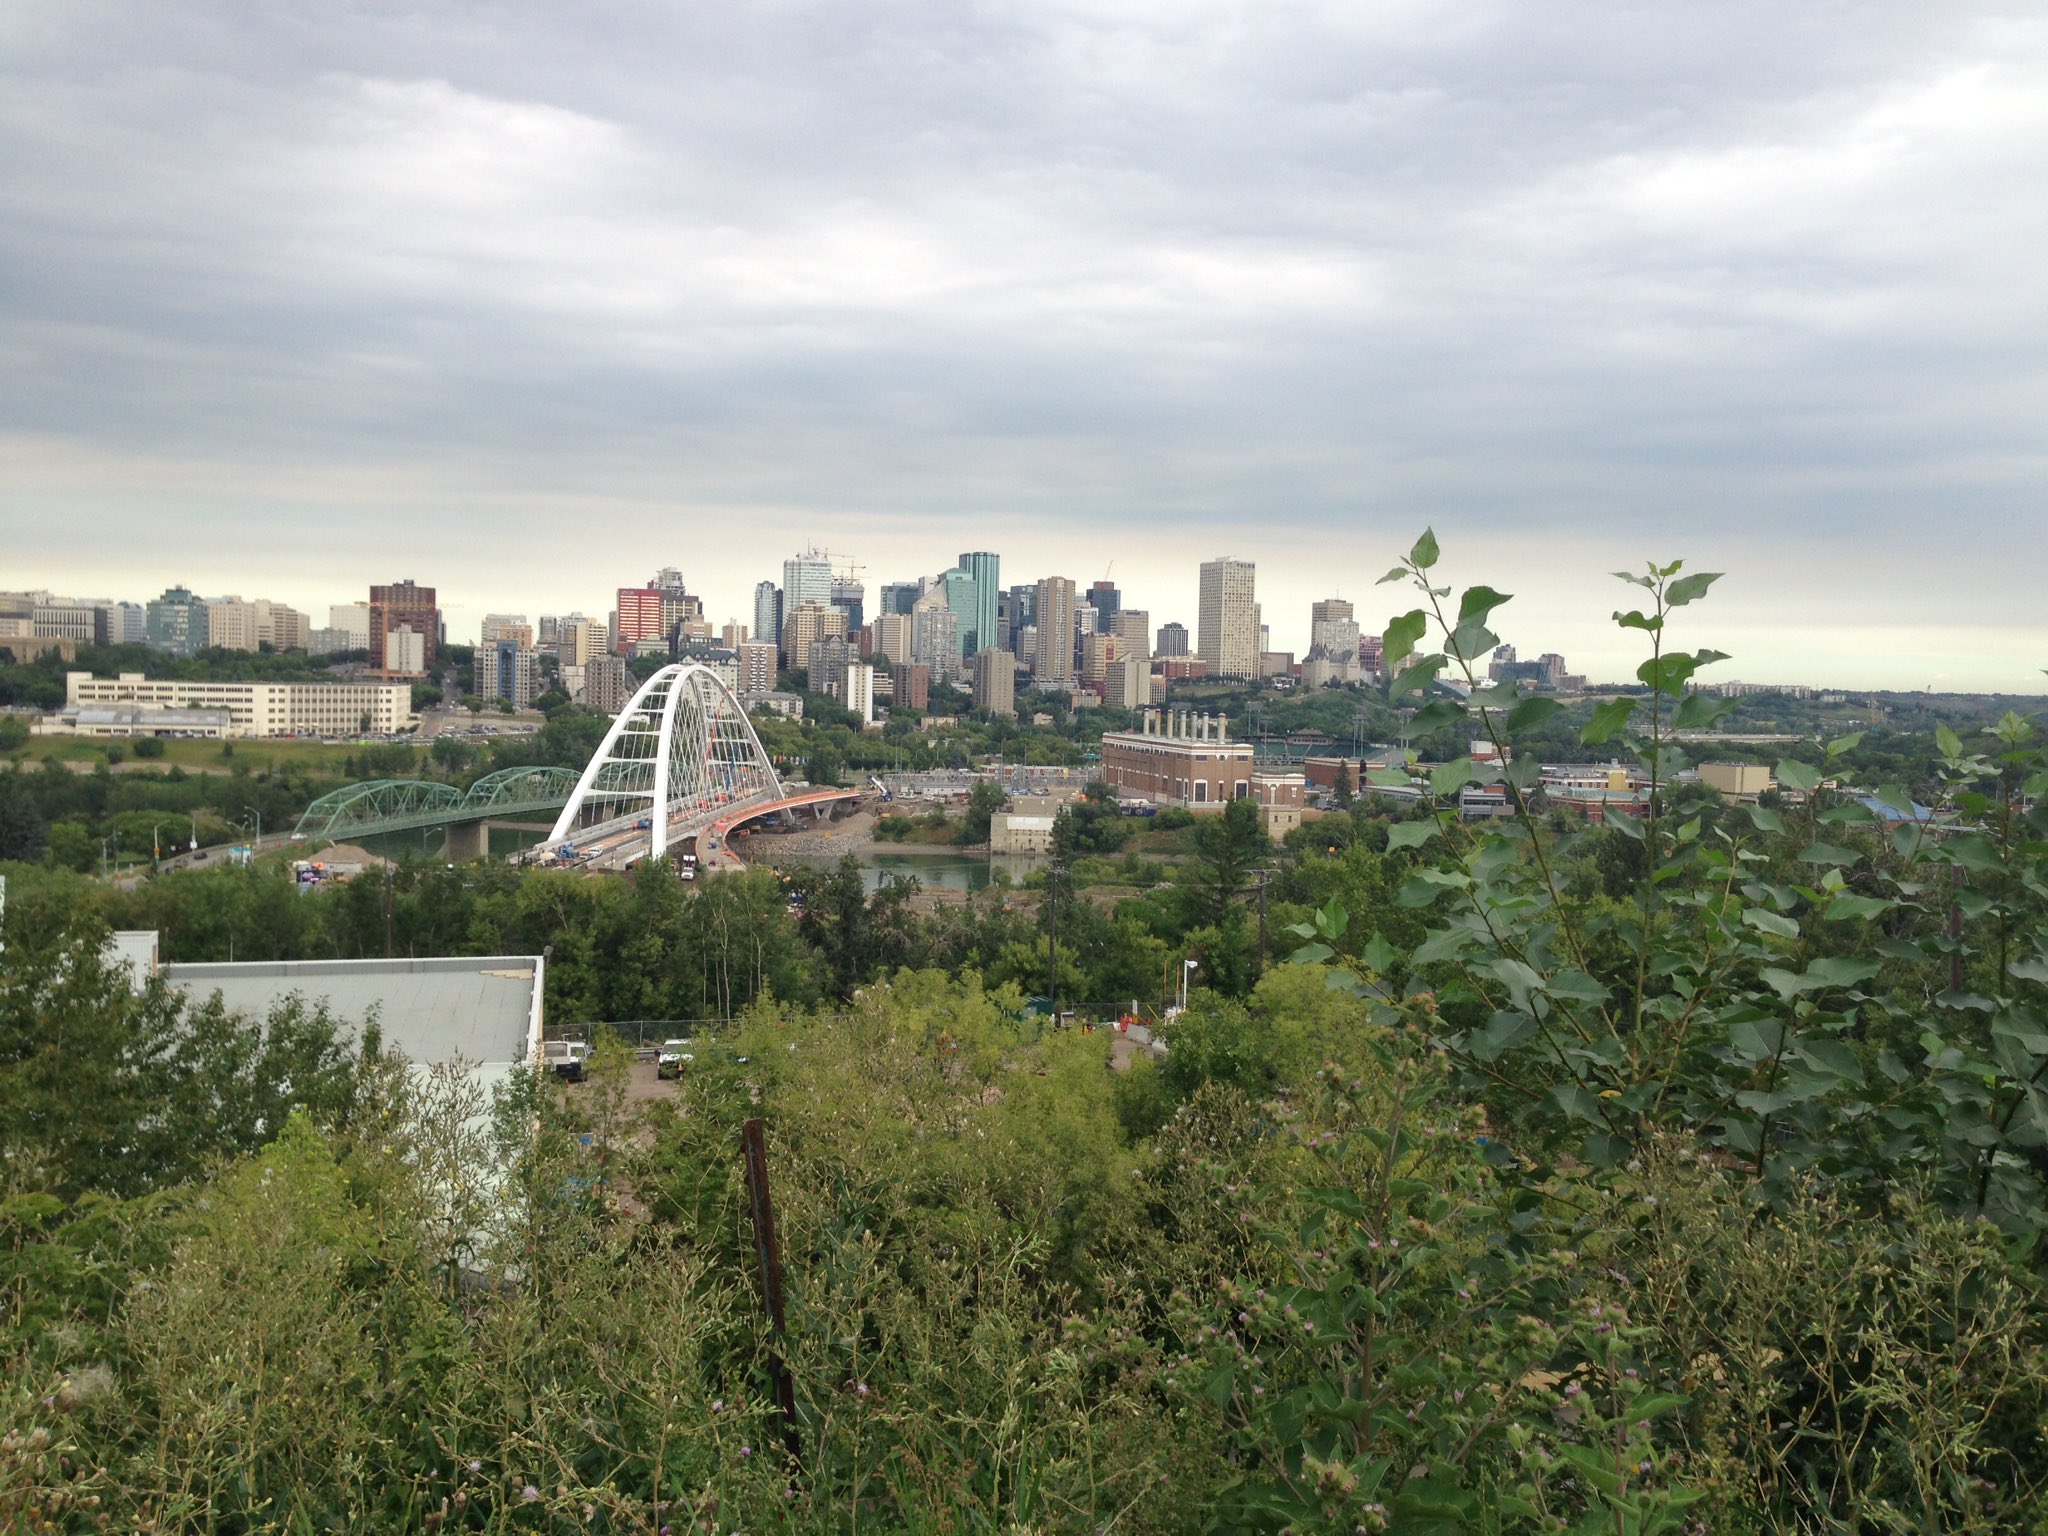 City of Edmonton skyline, widziany z Saskatchewan Drive 31 lipca 2017 roku.